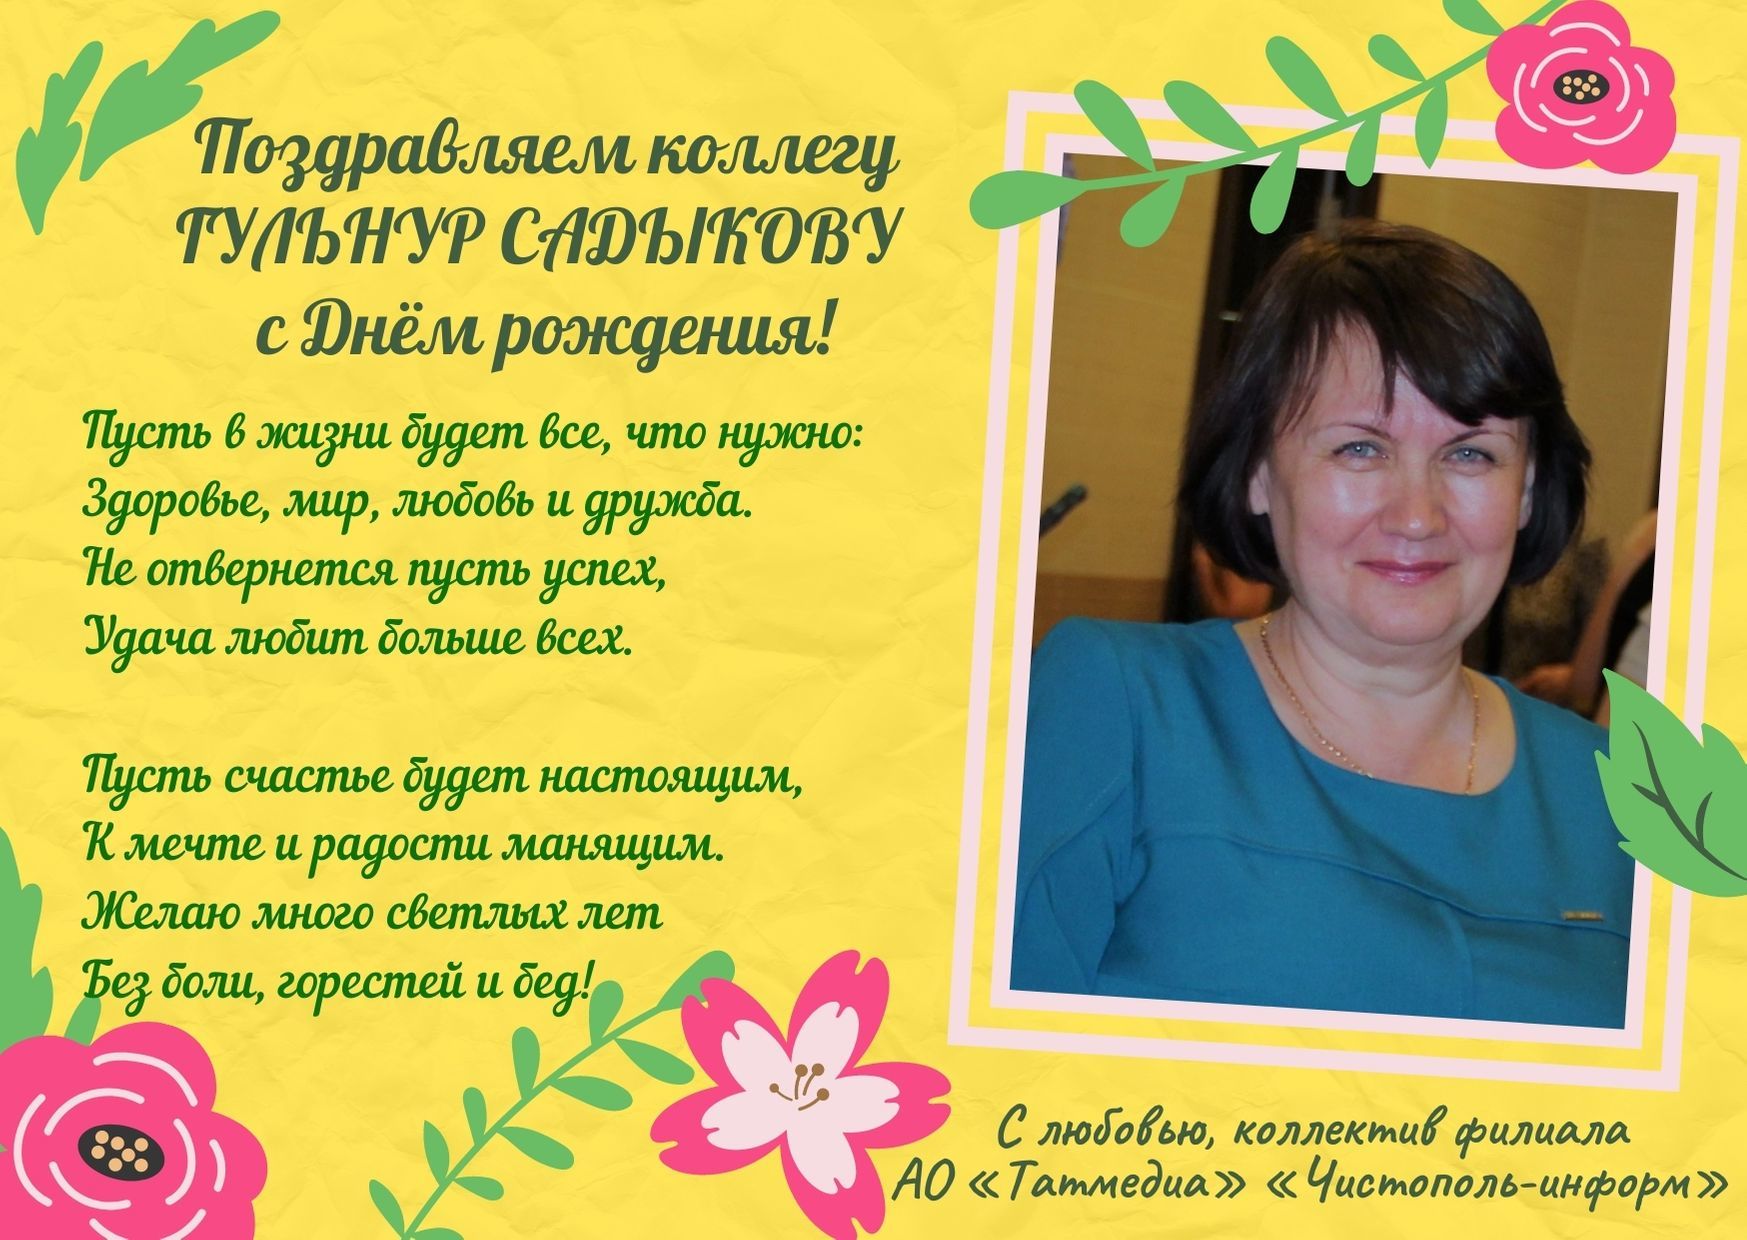 Поздравляем коллегу Гульнур Садыкову с днем рождения!